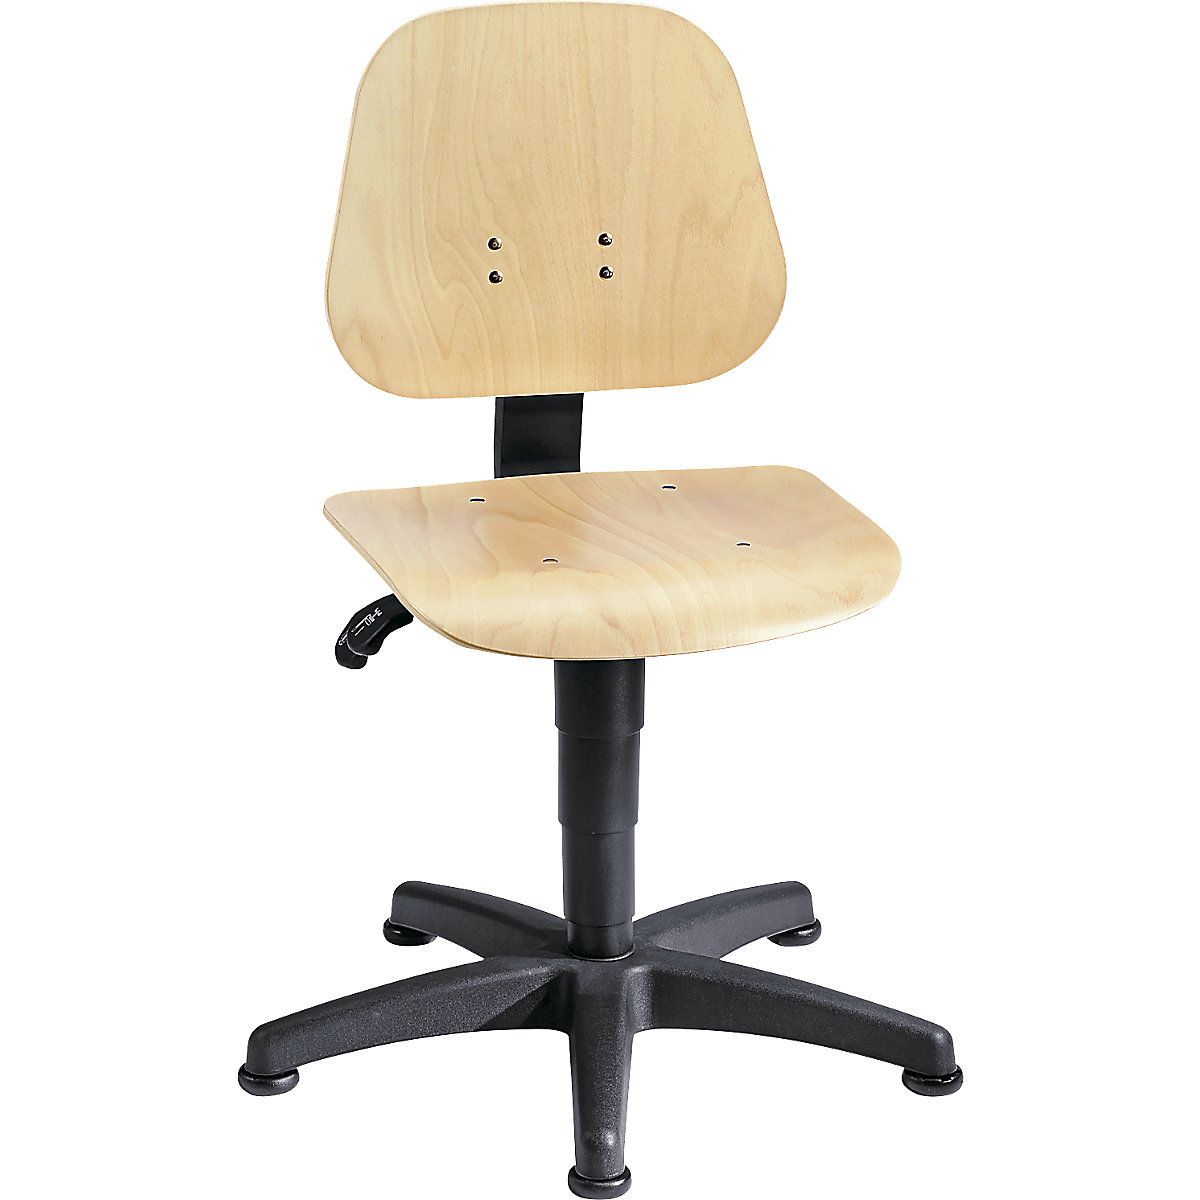 Okretni radni stolac – bimos, s namještanjem visine pomoću plinske opruge, slojevito drvo bukve, s podnim vodilicama, od 3 kom.-16